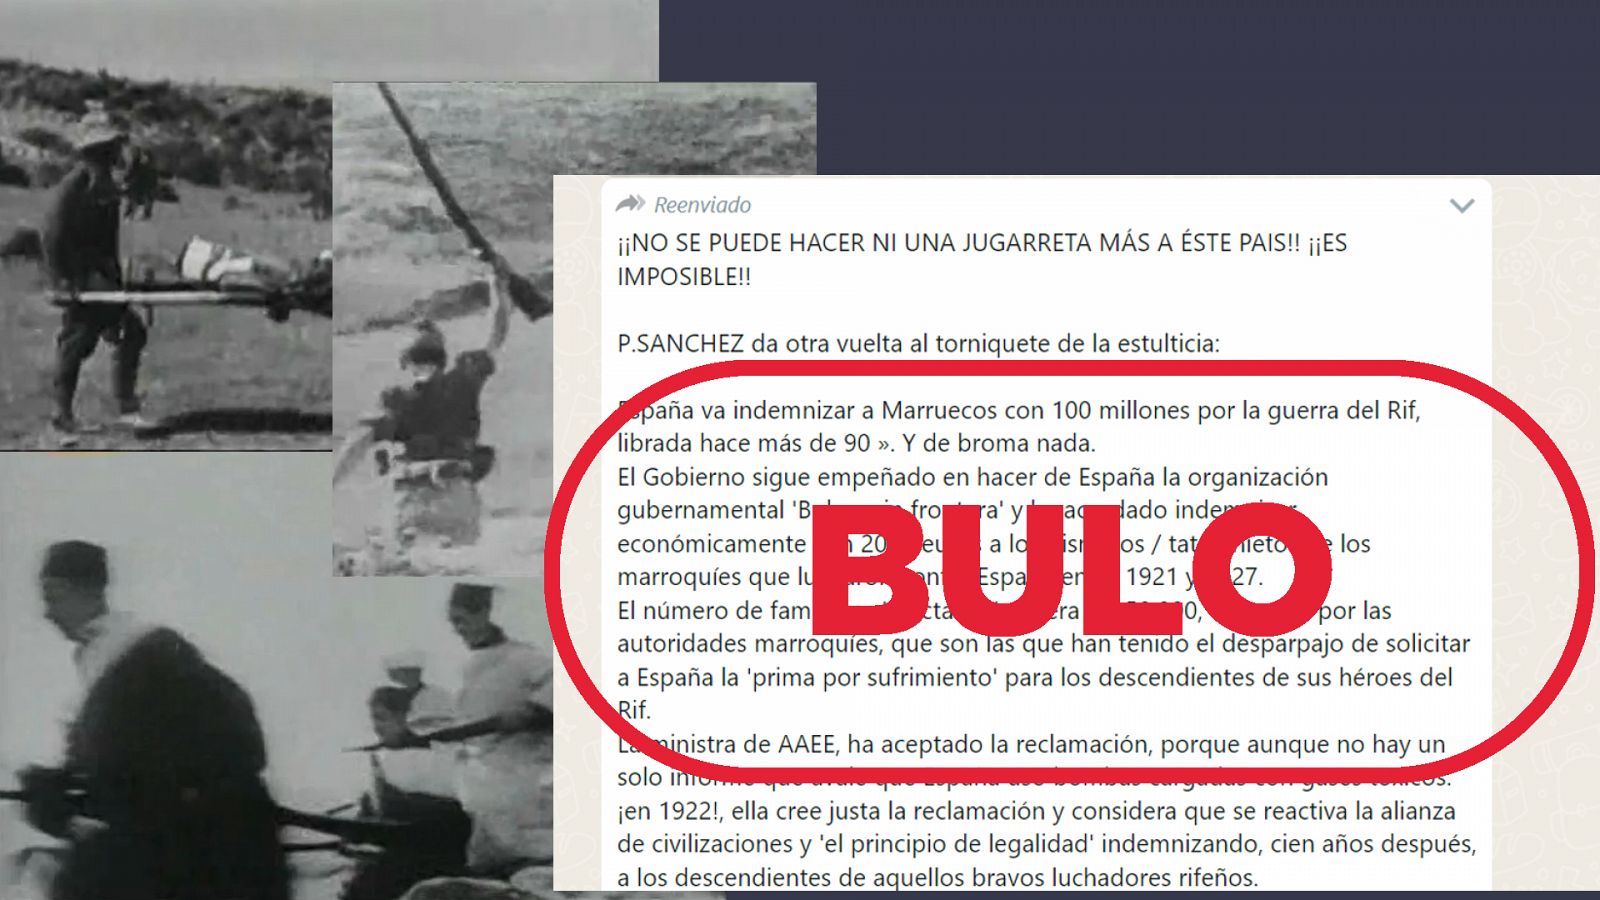 Imagen del mensaje que difunde el bulo sobre la indemnización de España a Marruecos por la guerra del Rif, con el sello de vulo de VerificaRTVE en rojo.